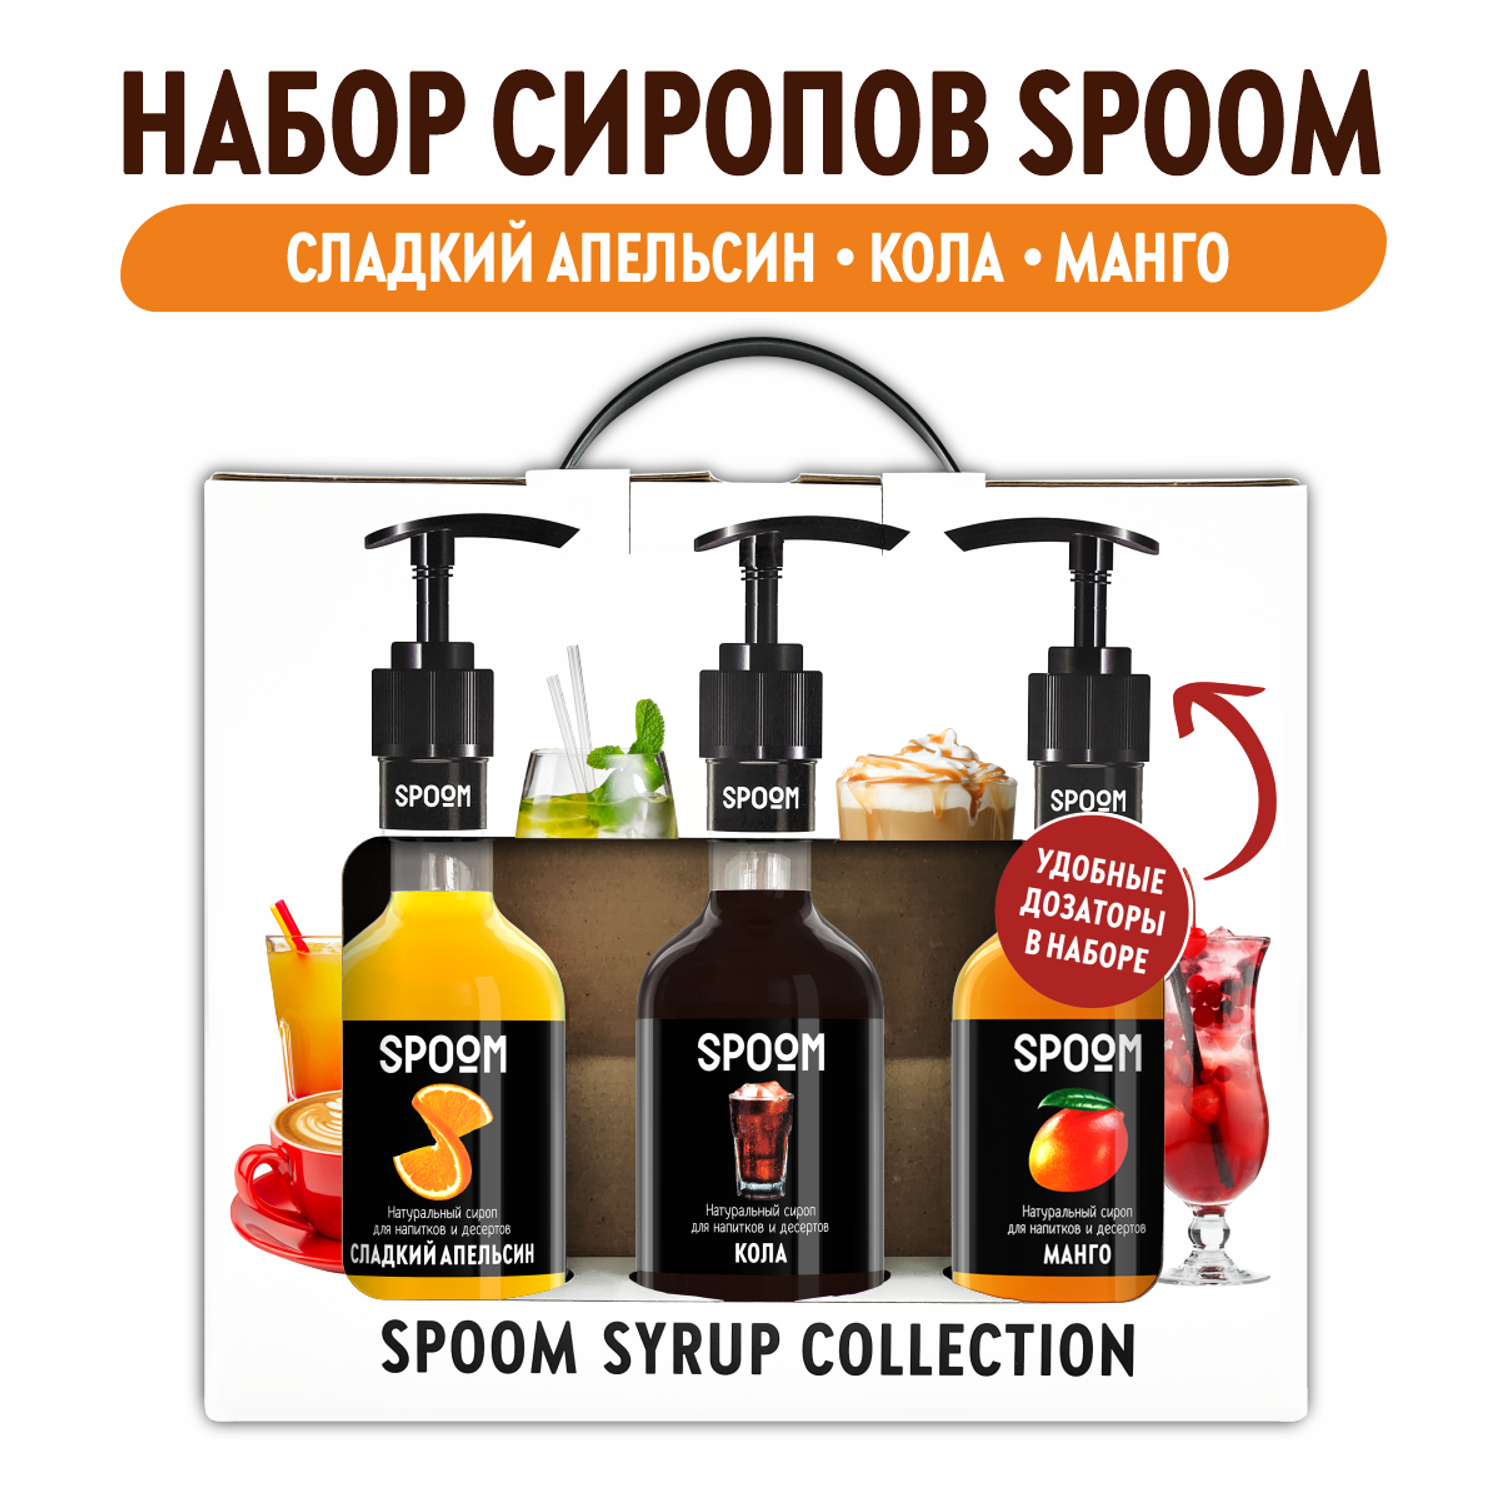 Набор сиропов SPOOM Апельсин сладкий Кола Манго для коктейлей чая и кофе 3шт 250мл + 3 дозатора - фото 1